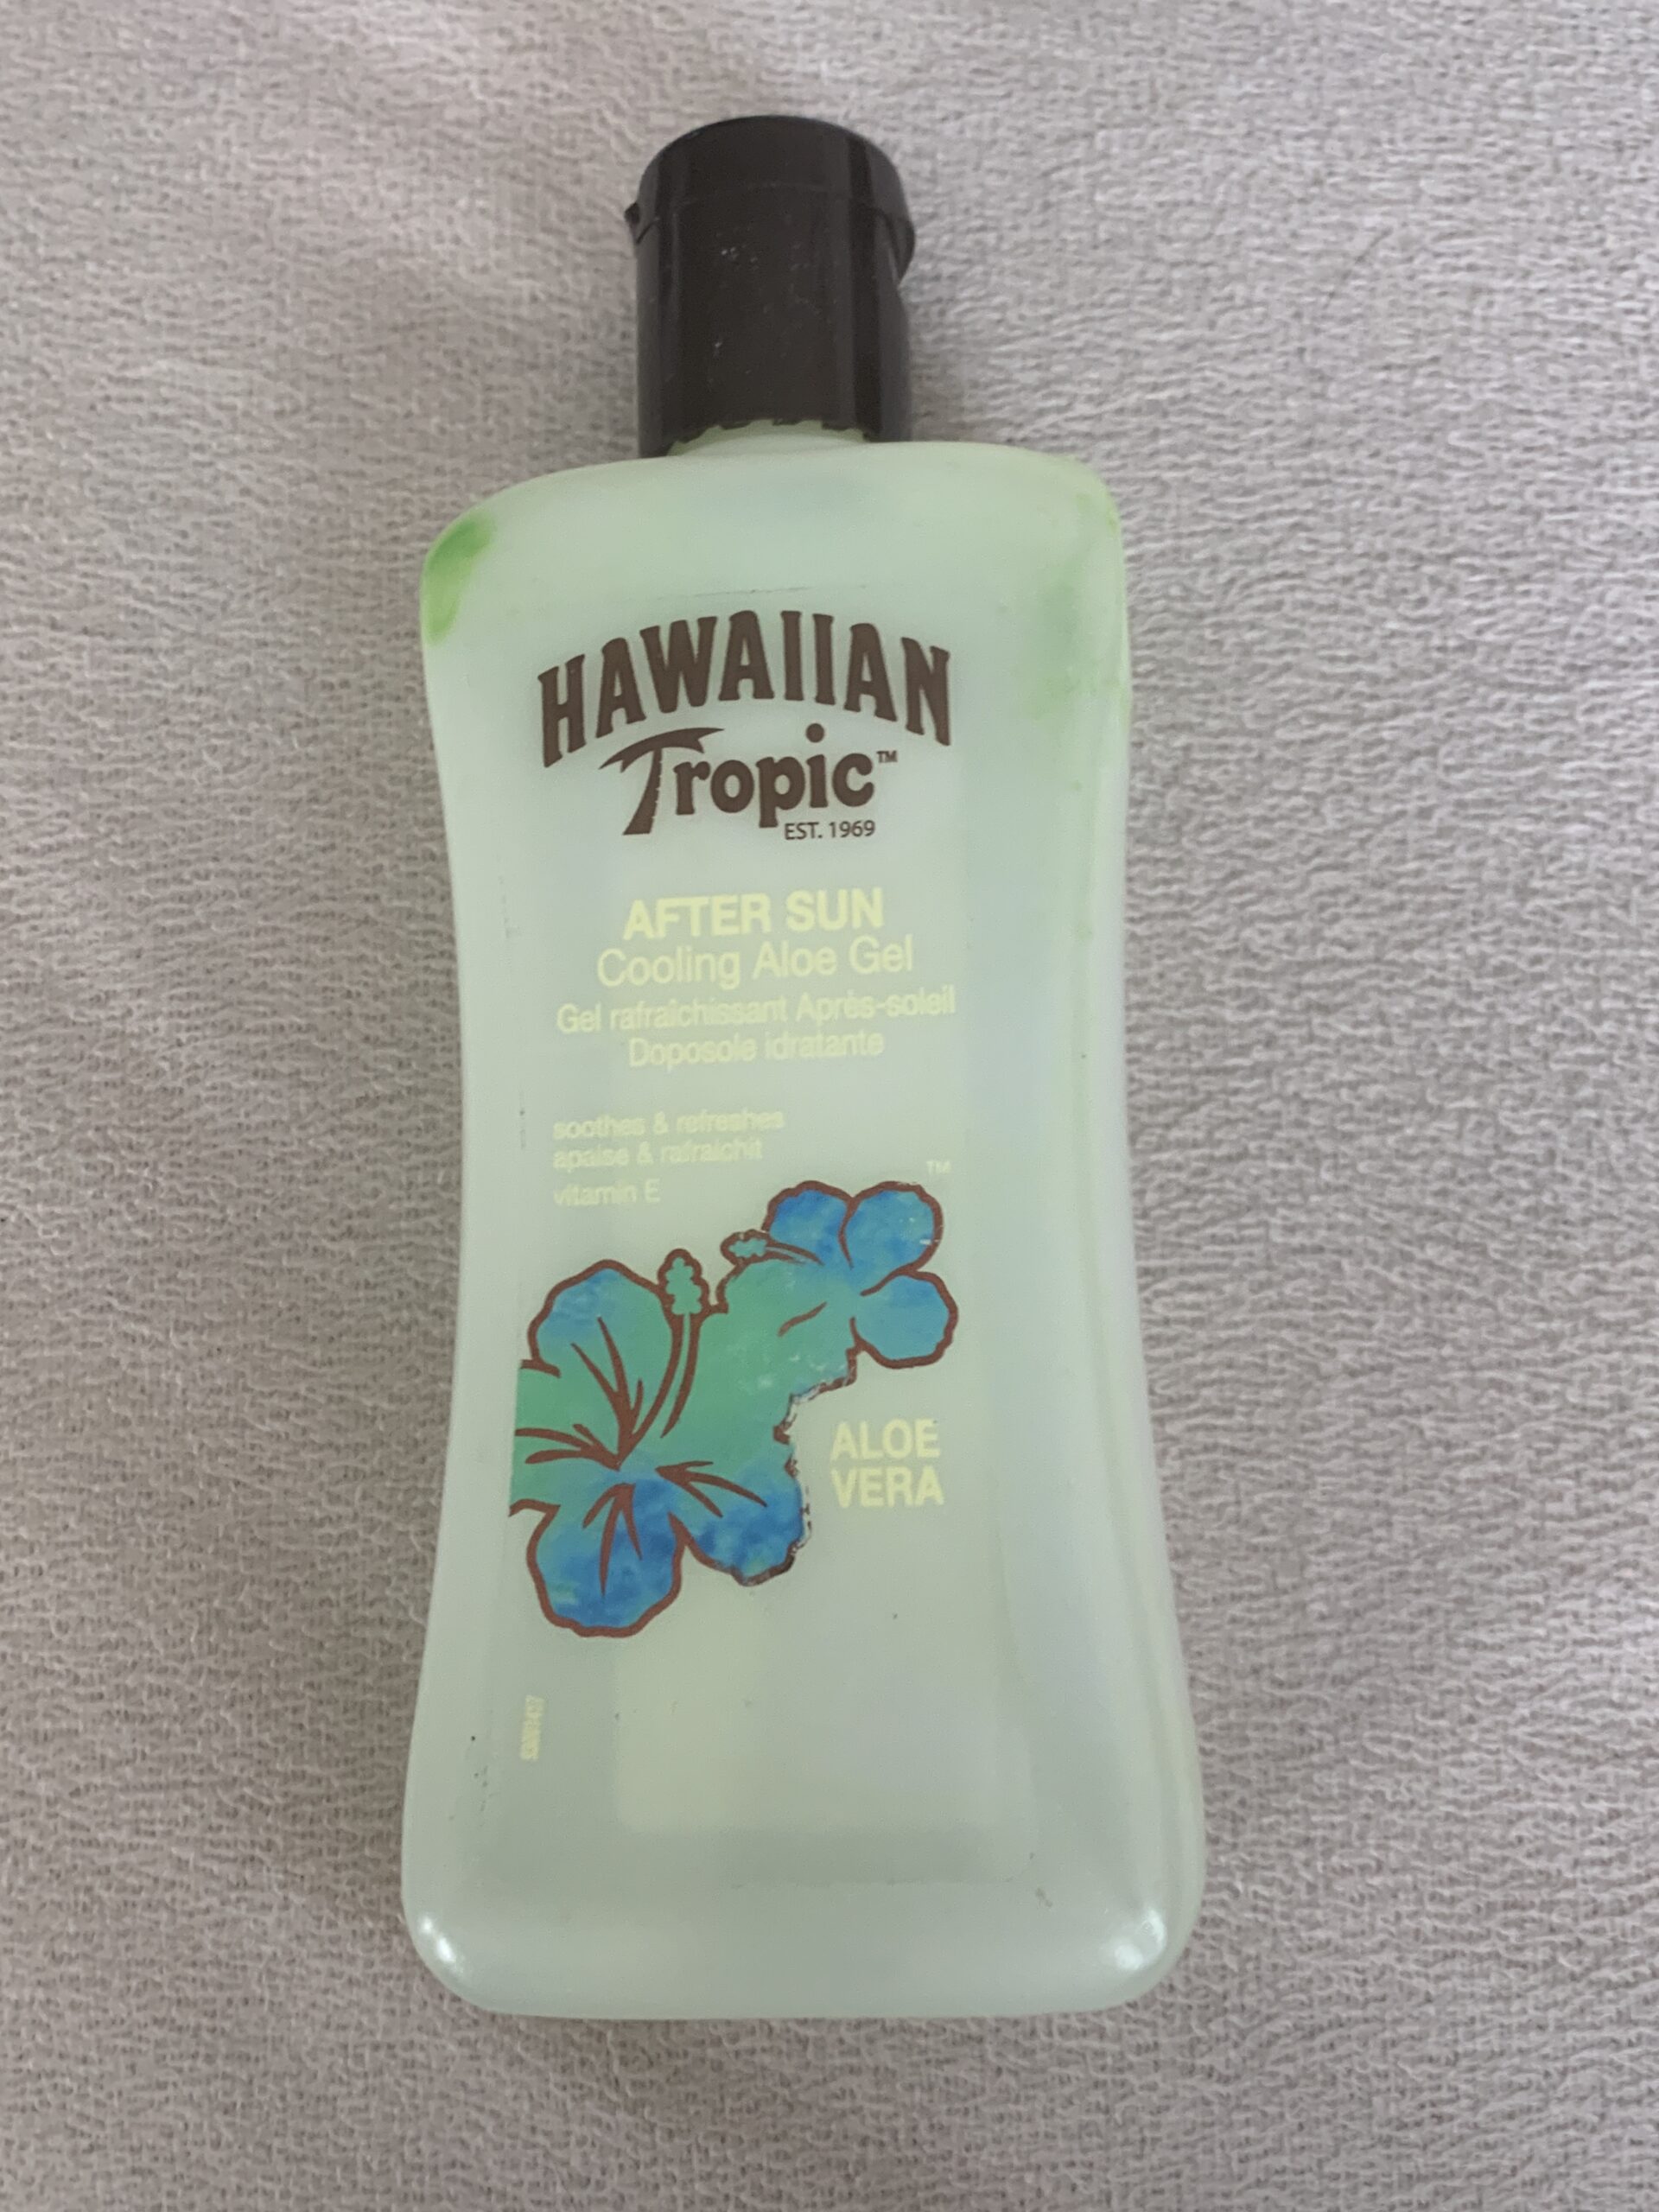 Hawaiian Tropic After Sun Cooling aloe gel